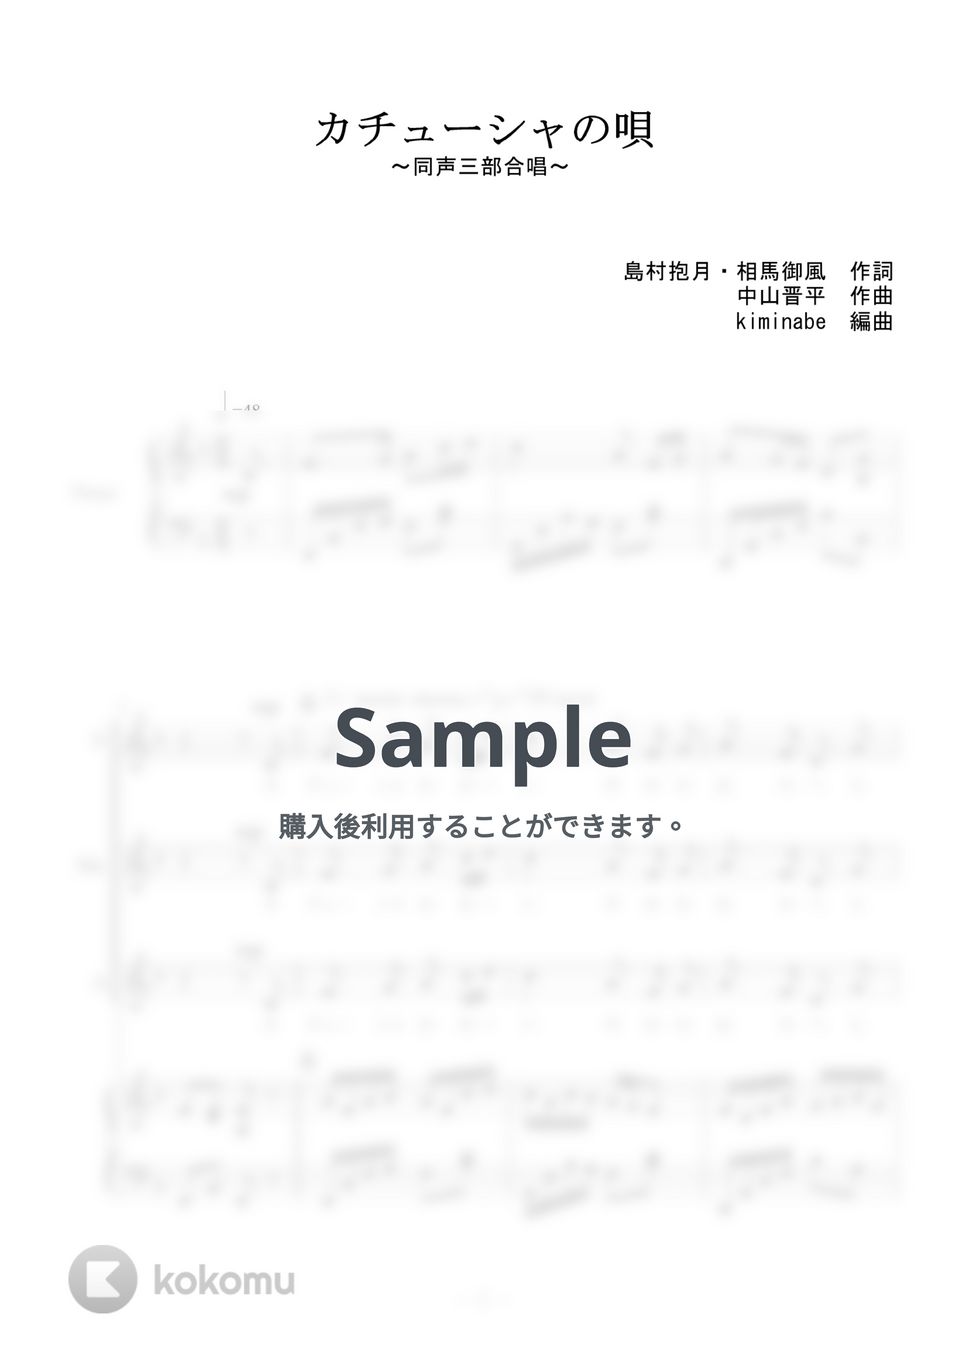 中山晋平 - カチューシャの唄 (同声三部合唱) by kiminabe